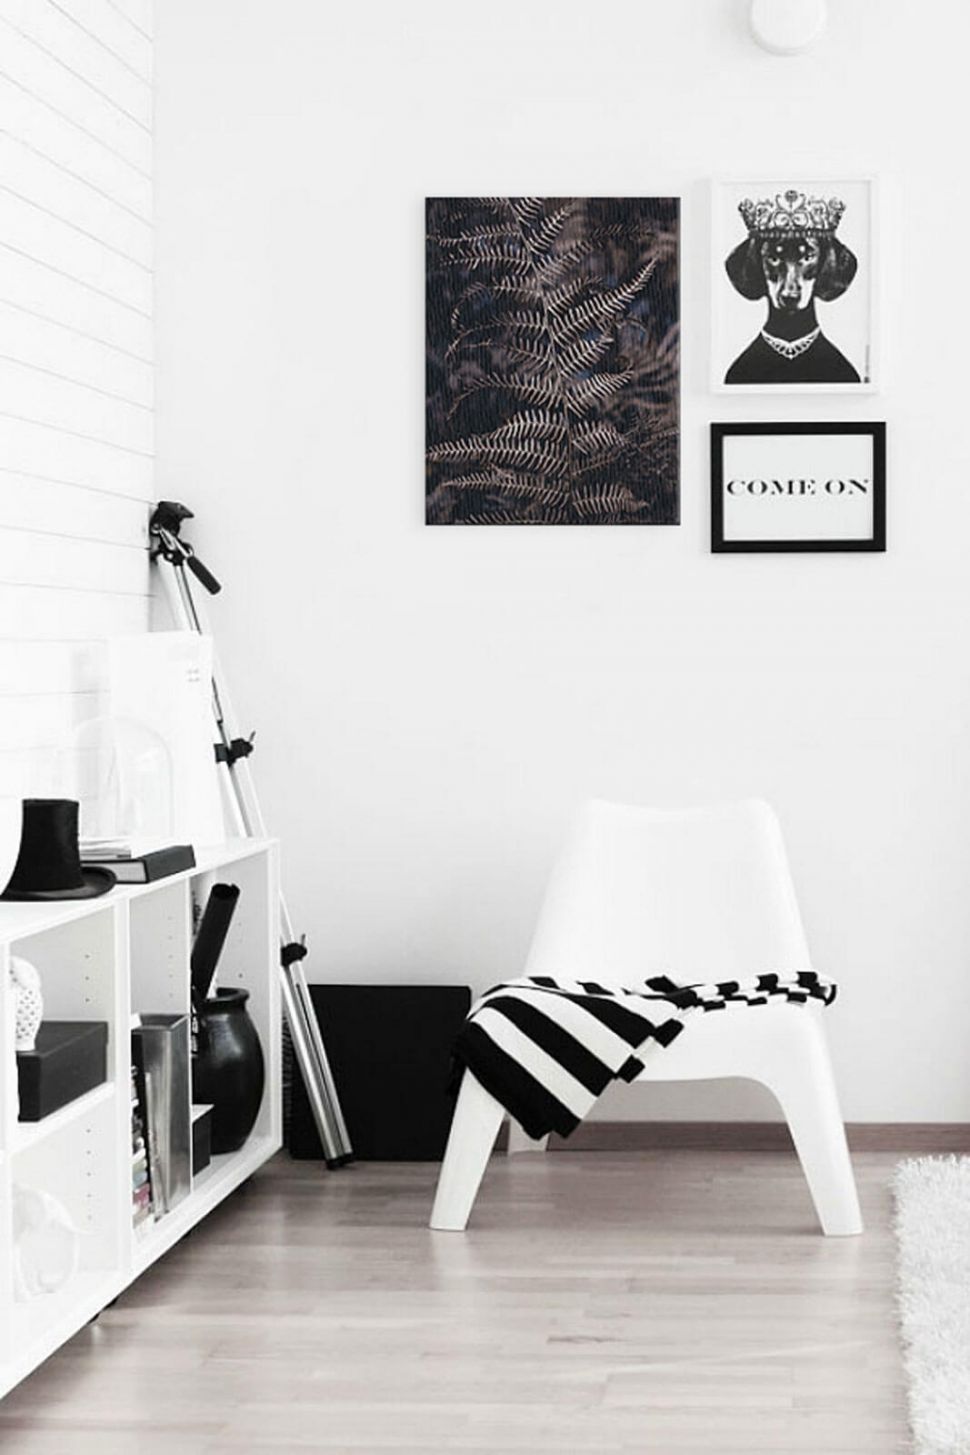 Obraz na płótnie z liściem paproci powieszony w pokoju nad białym fotelem